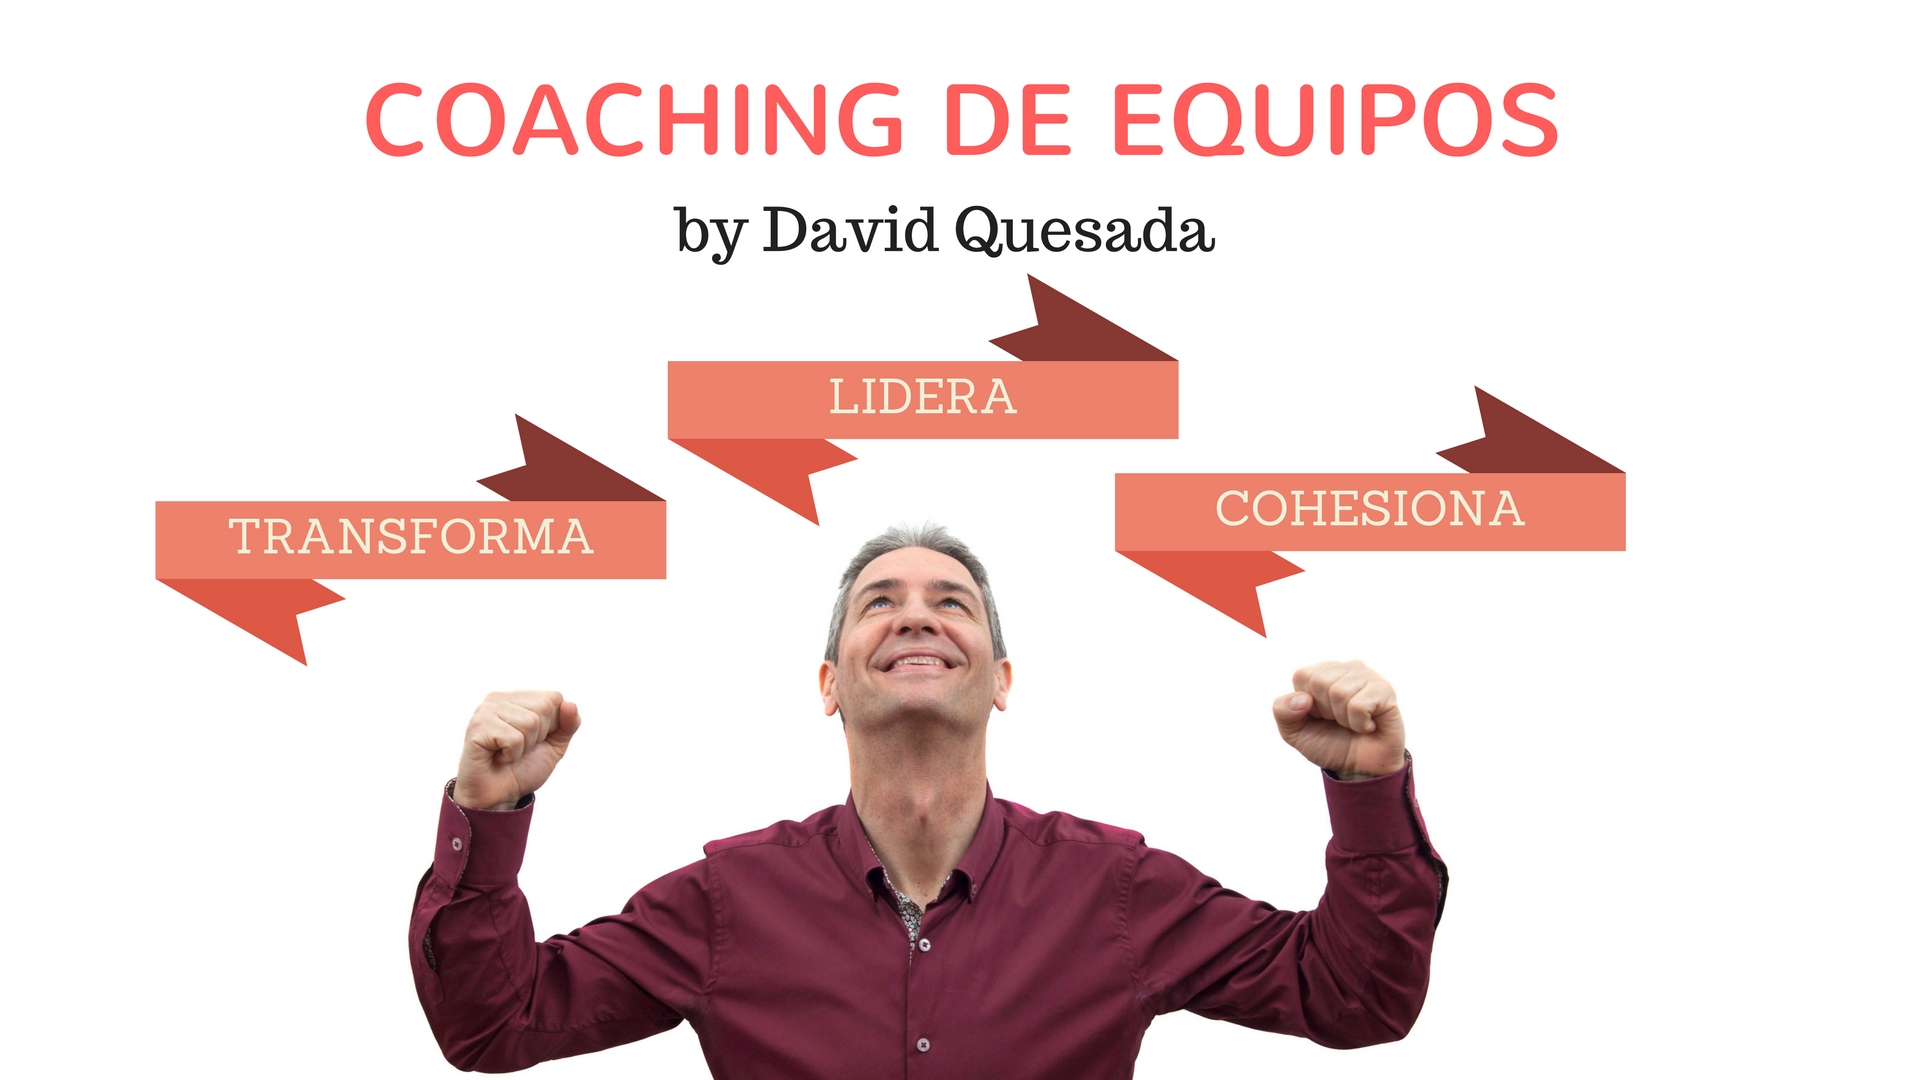 Coaching de Equipos by David Quesada